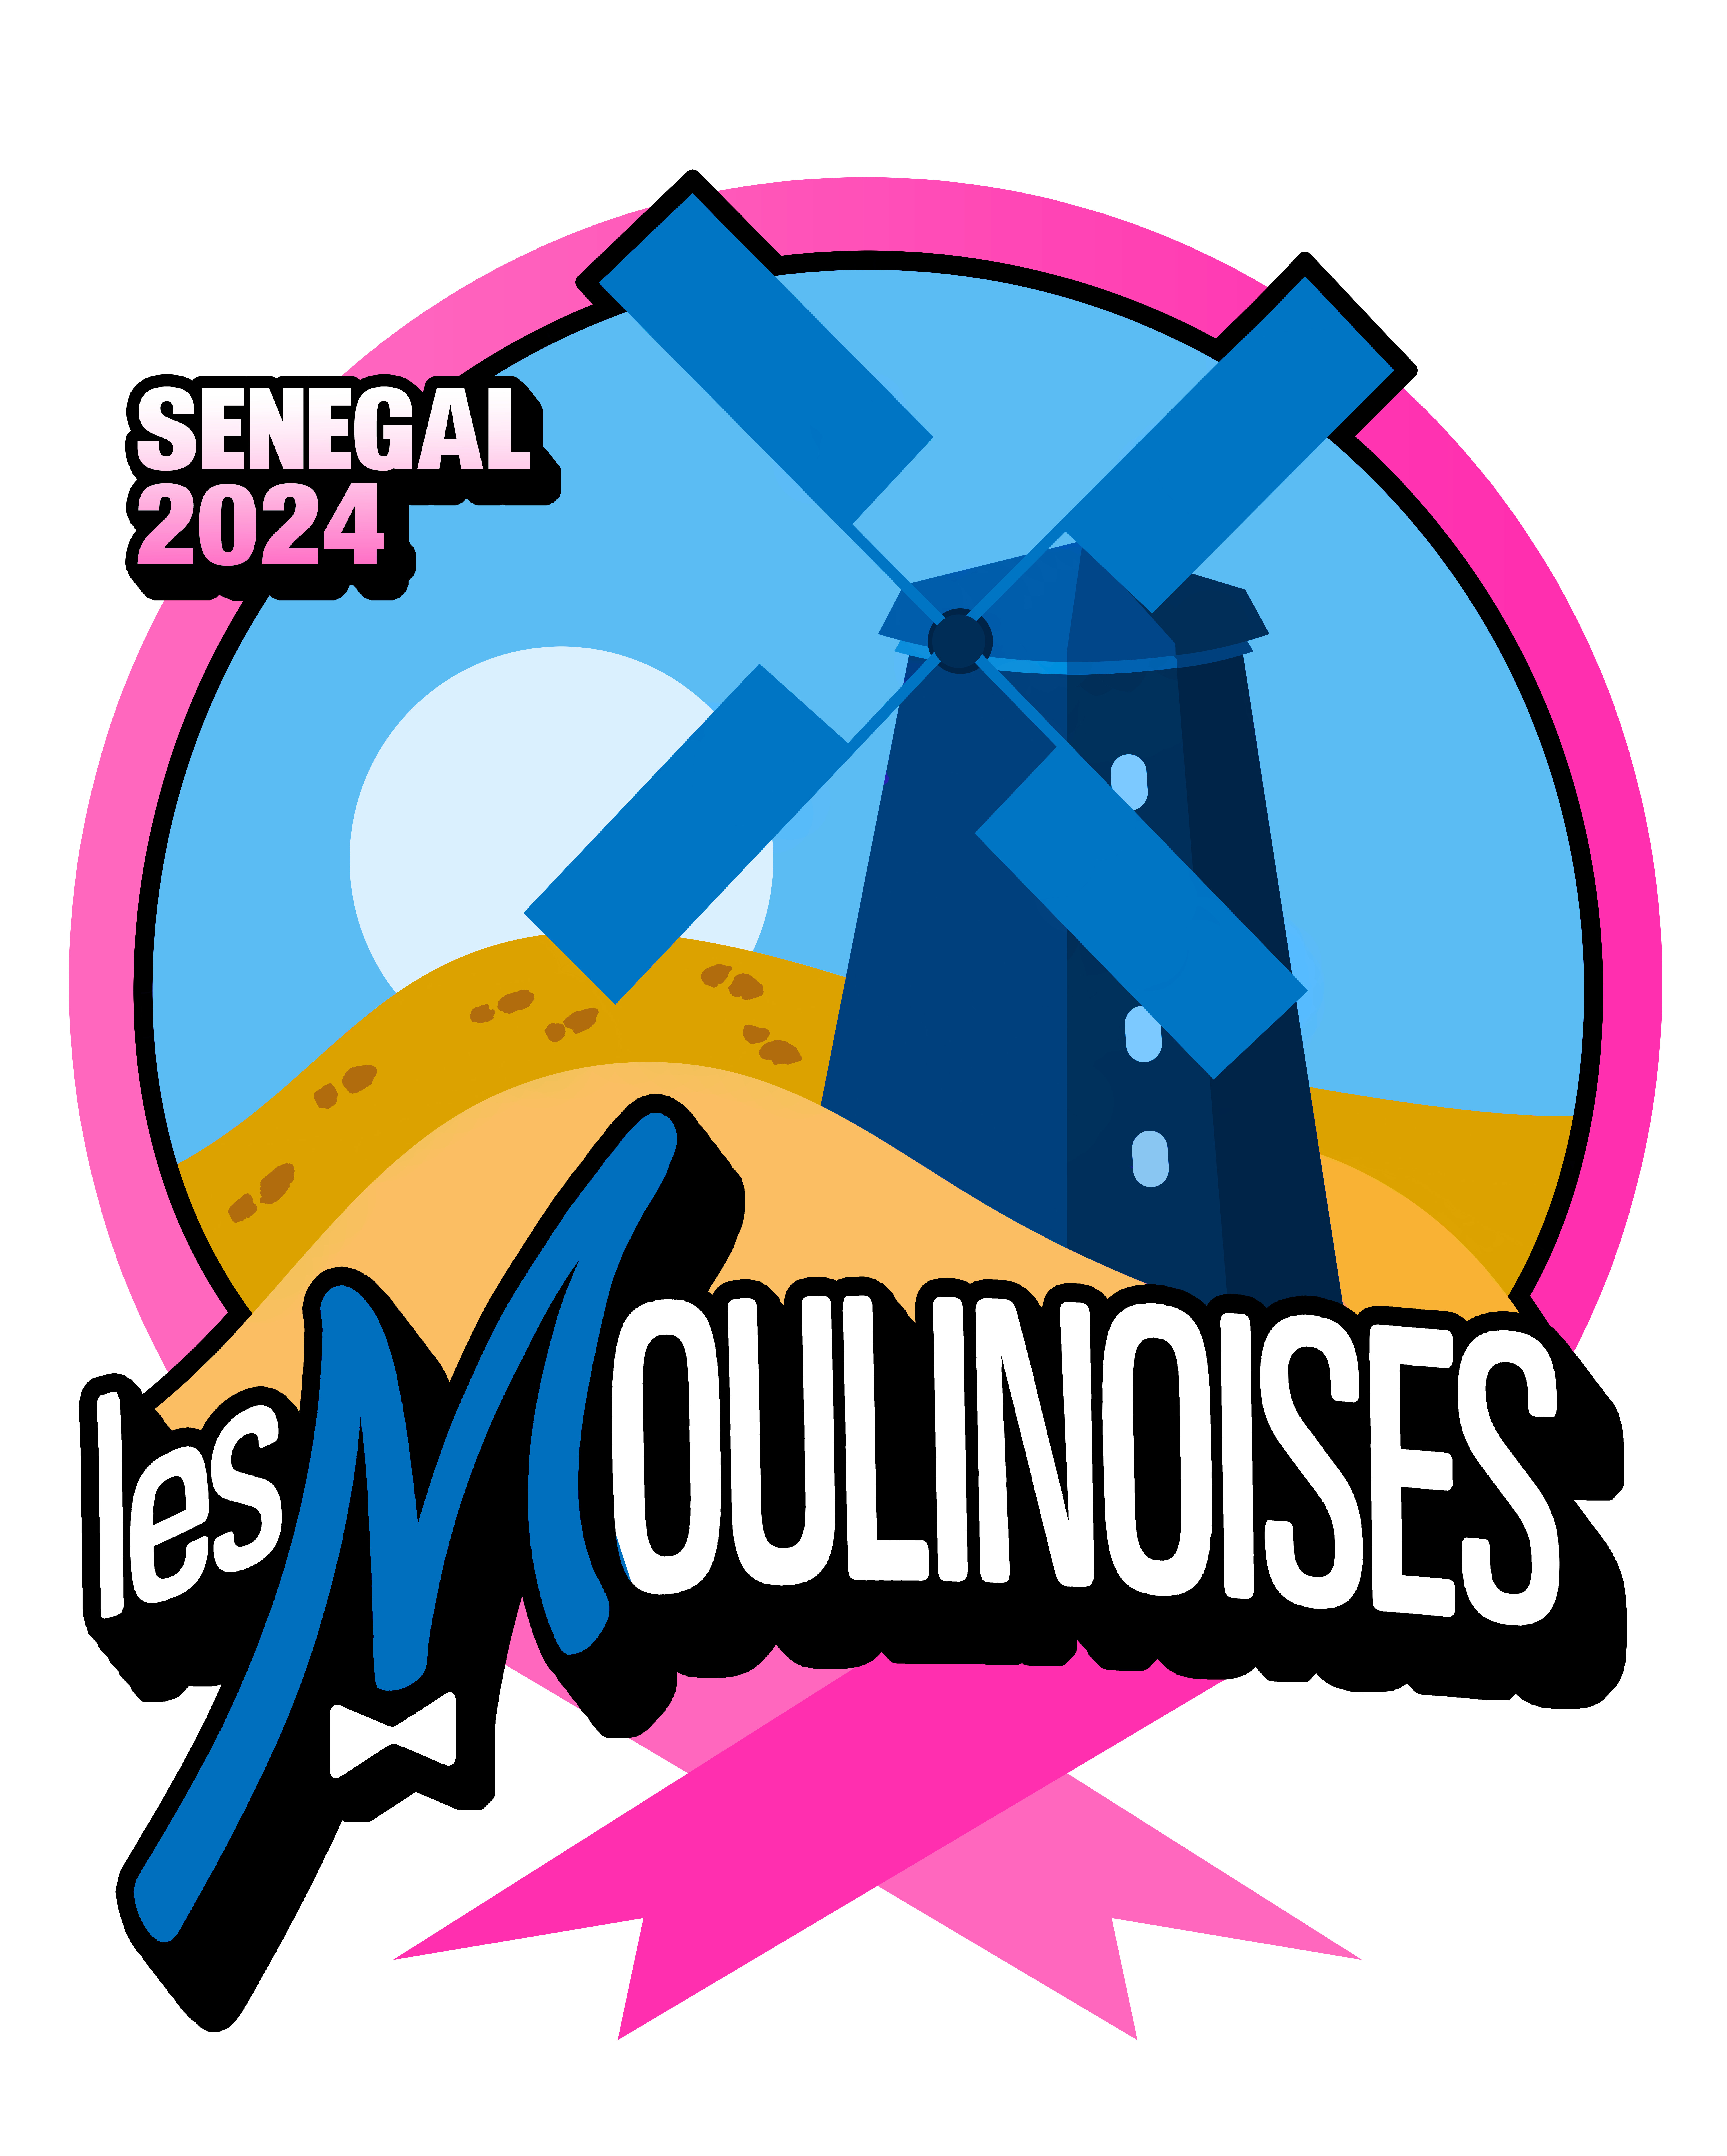 LesMoulinoises_logo_PROCURE (2).png